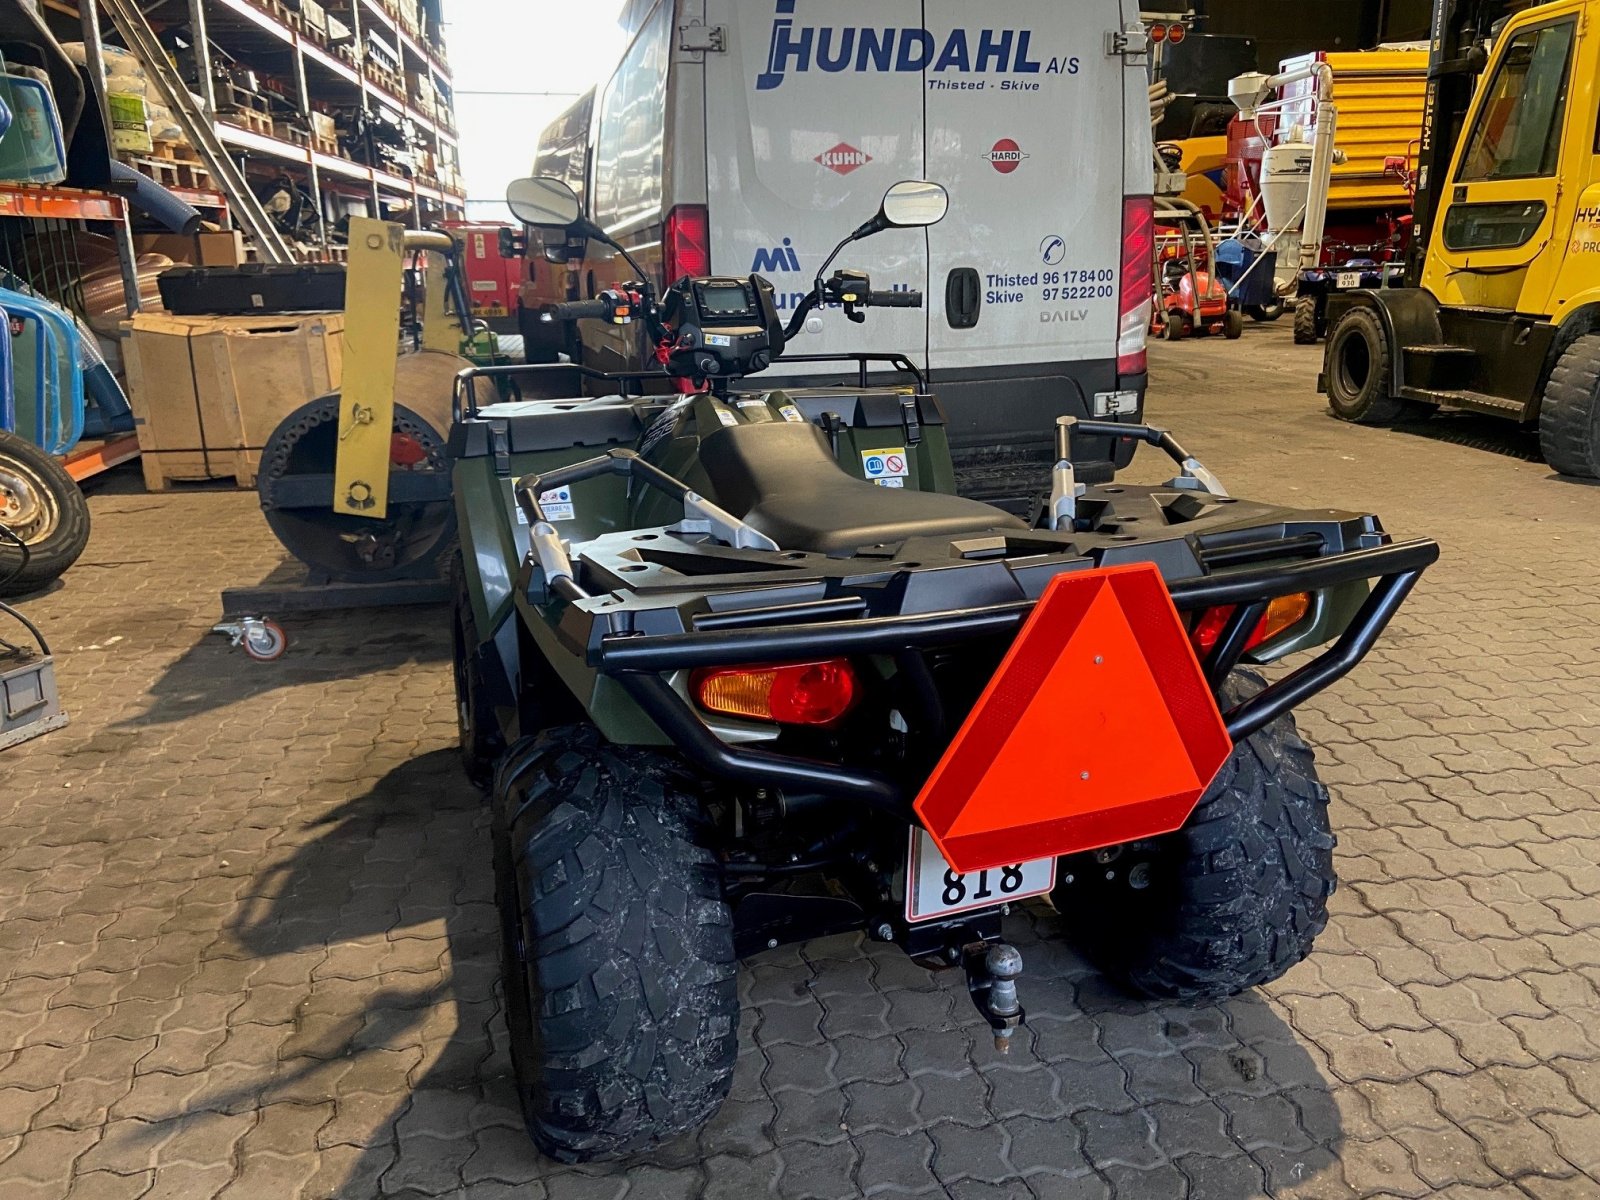 ATV & Quad des Typs Polaris SPORTSMAN 570 TRAC, Gebrauchtmaschine in Thisted (Bild 3)